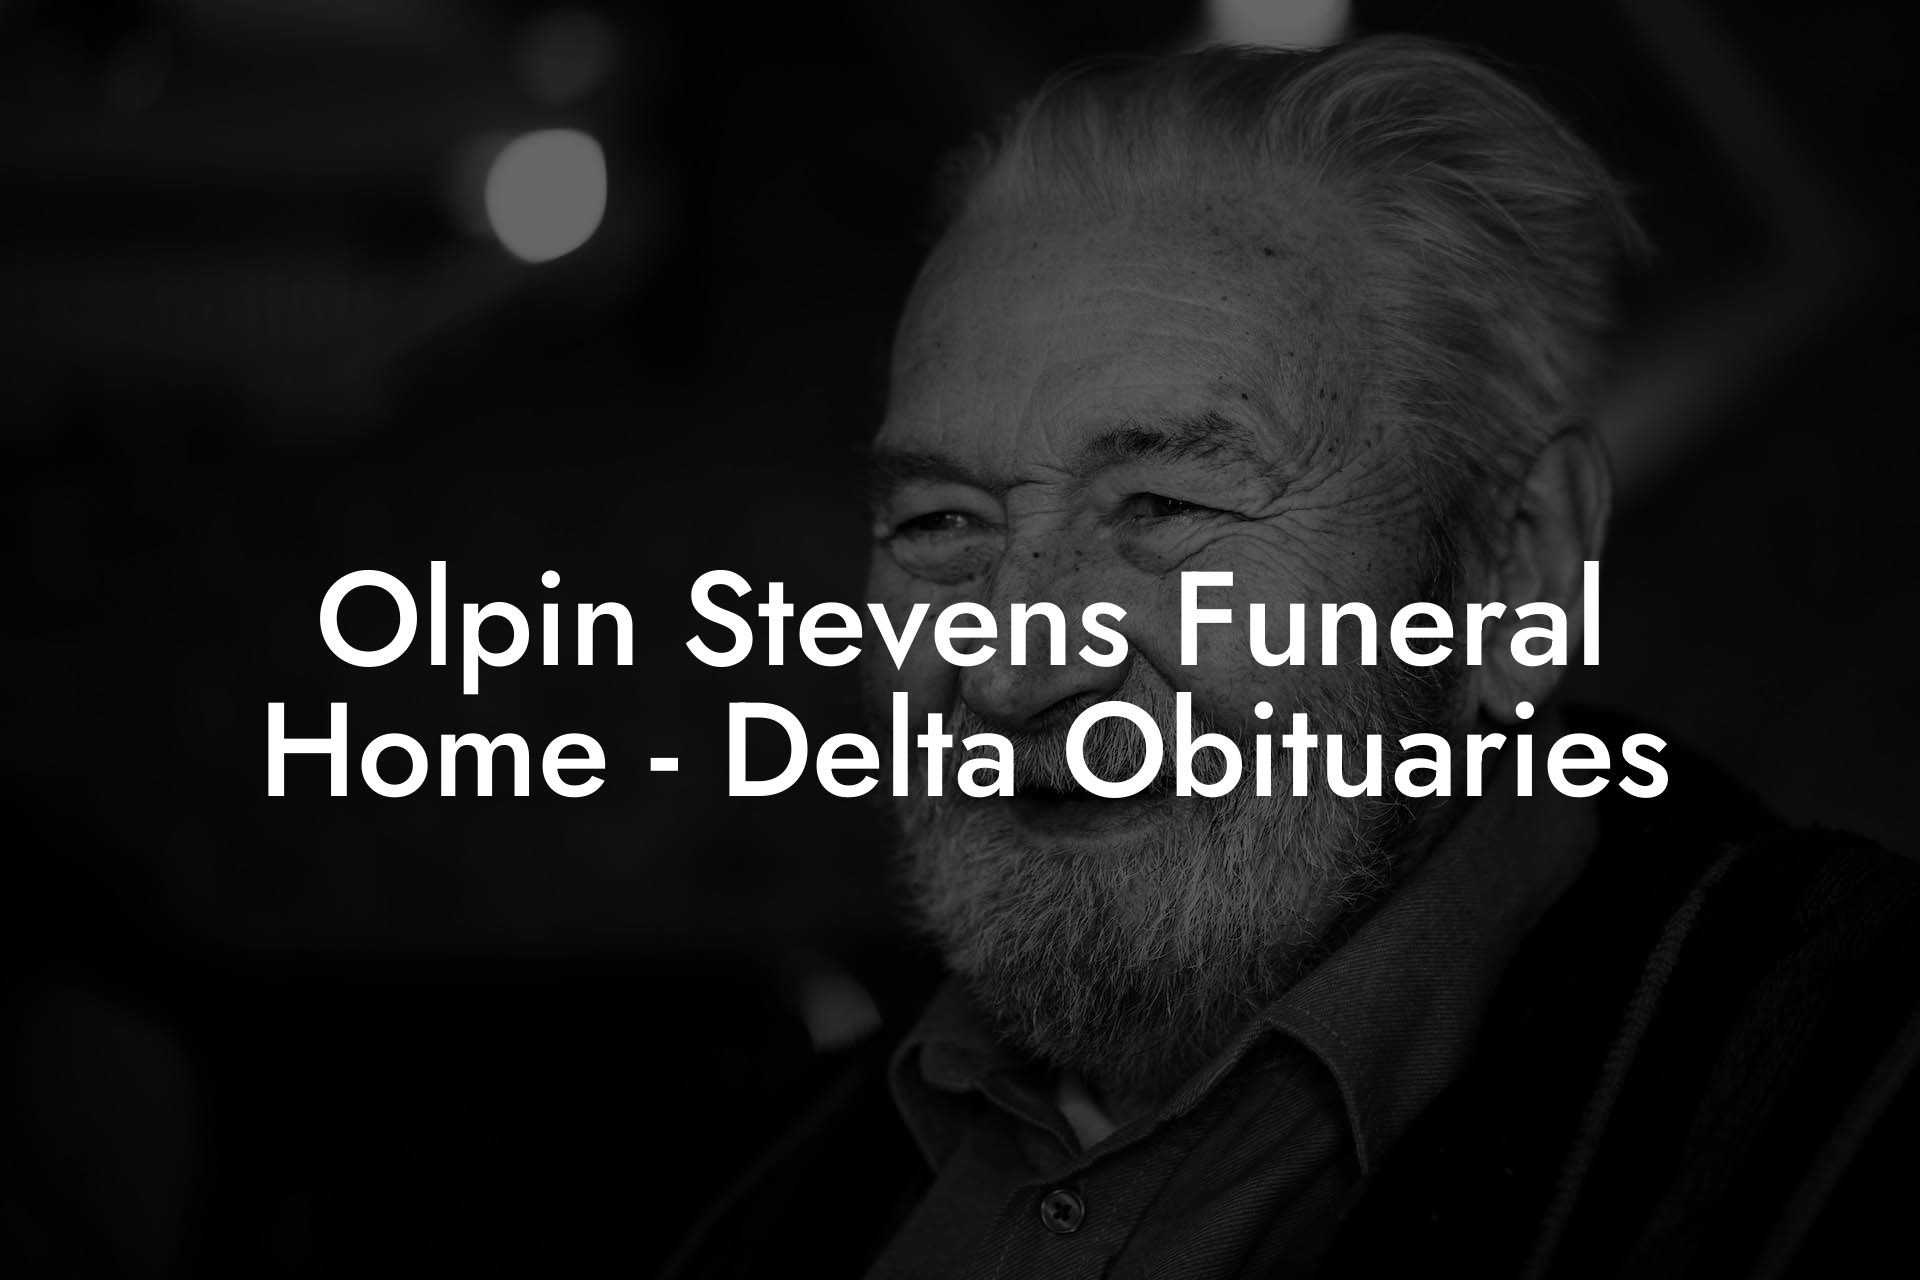 Olpin Stevens Funeral Home - Delta Obituaries